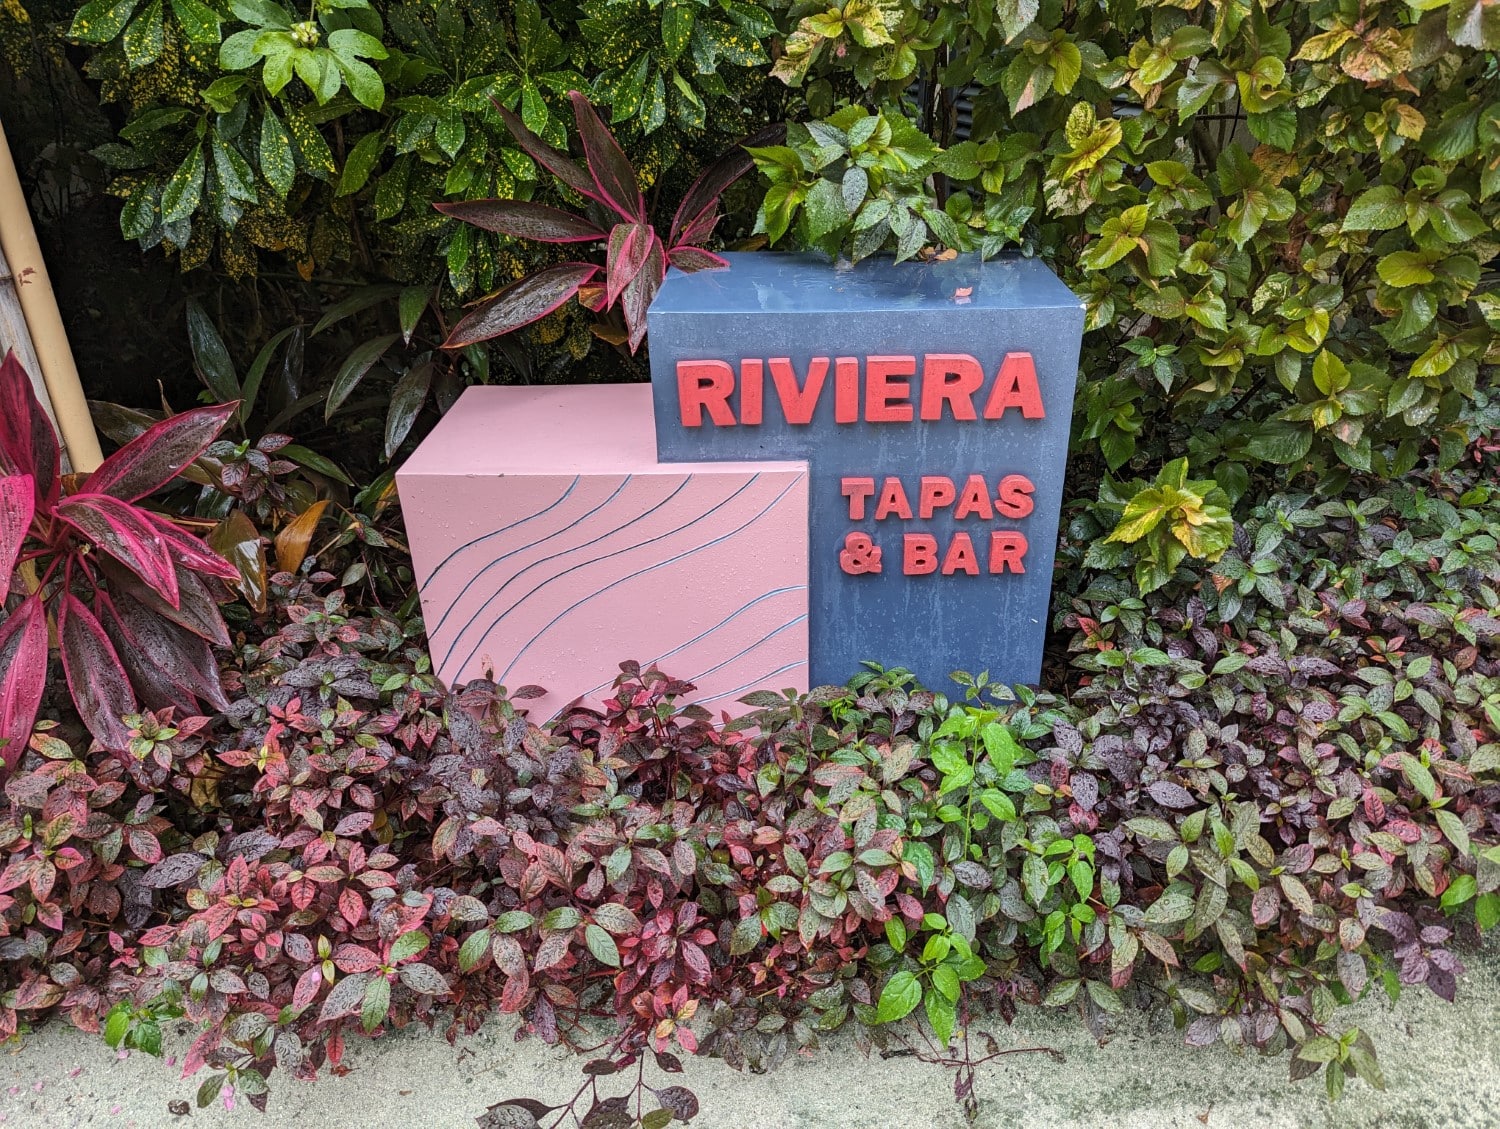 le meridien maldives resort & spa riviera tapas and bar sign